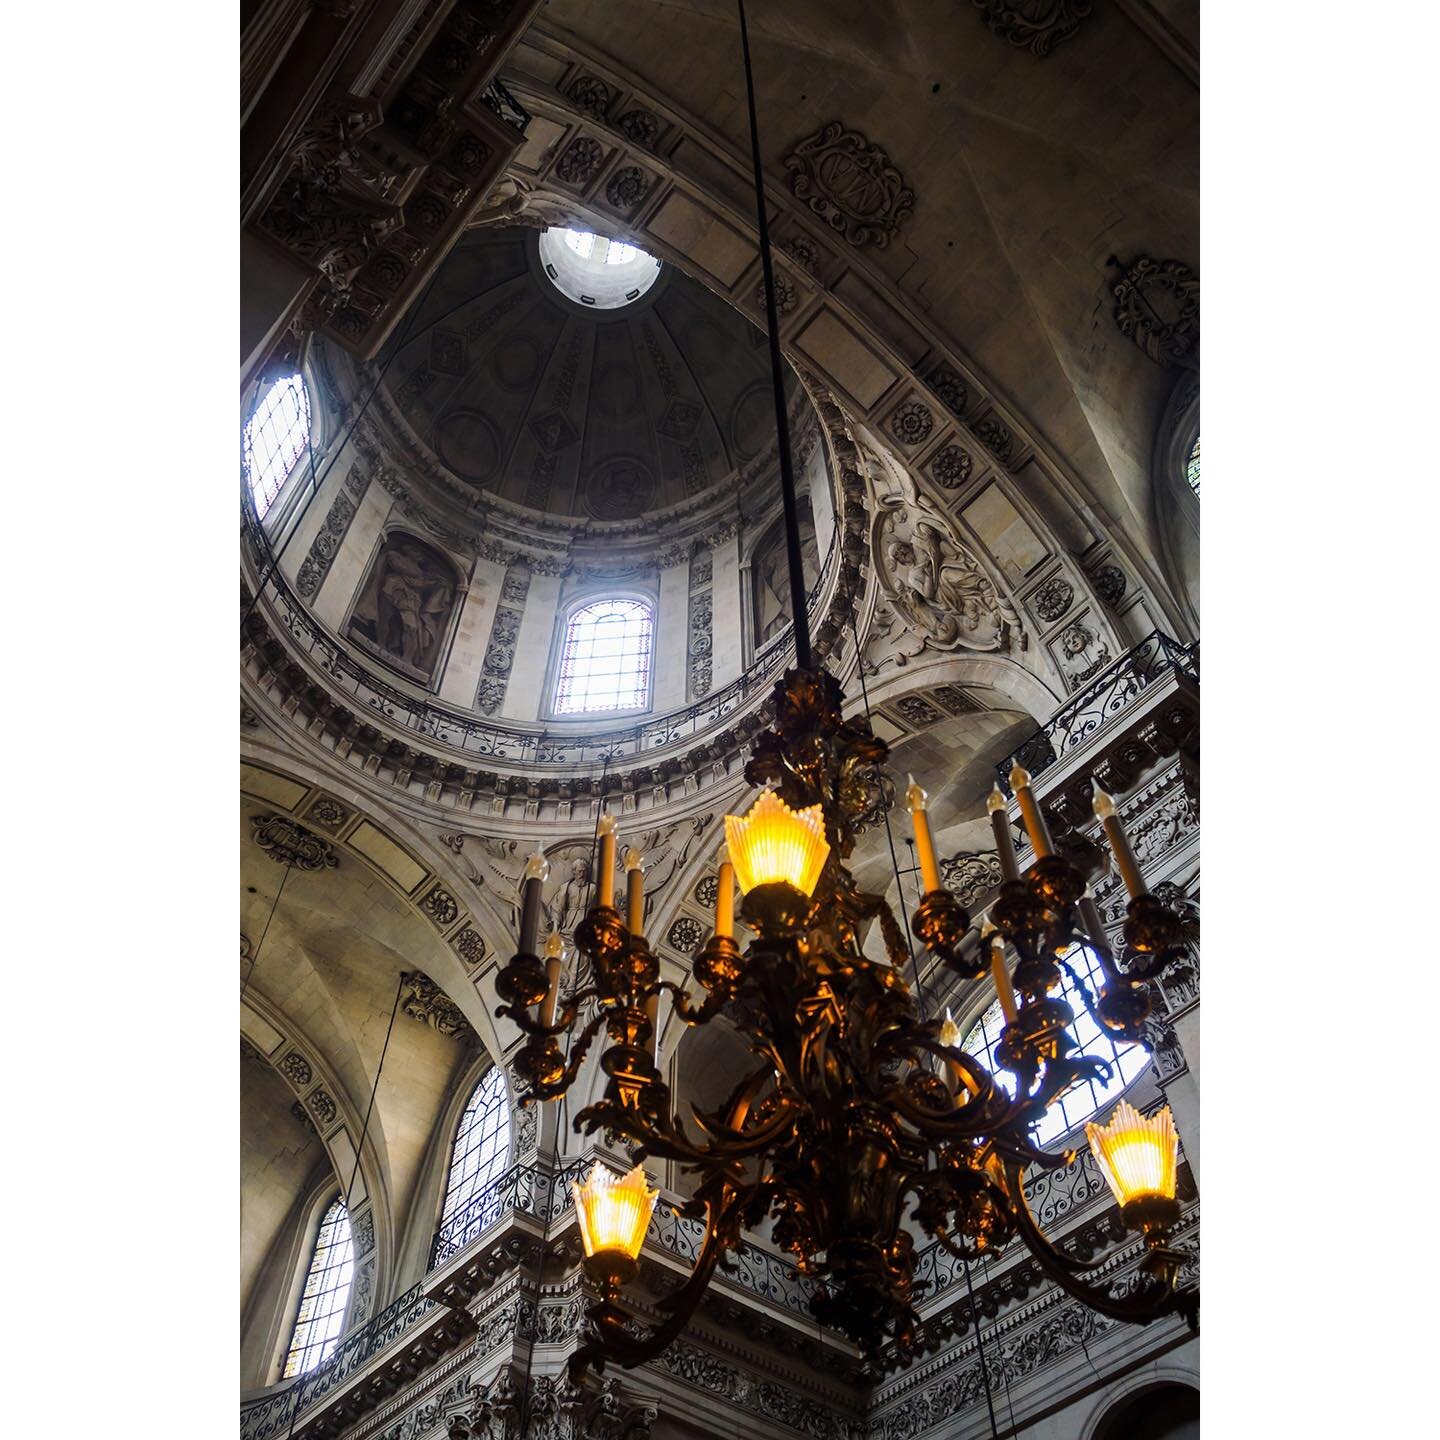 Saint Paul church - Paris
.
.

#Paris #SaintPaul #churchphotography #Parischurches #churchinterior #lightandshadow #visitParis #architecturephotography #ParisFranceofficial #churchoninstagram #historicalarchitecture #SaintPaulSaintLouis #Parisphotogr